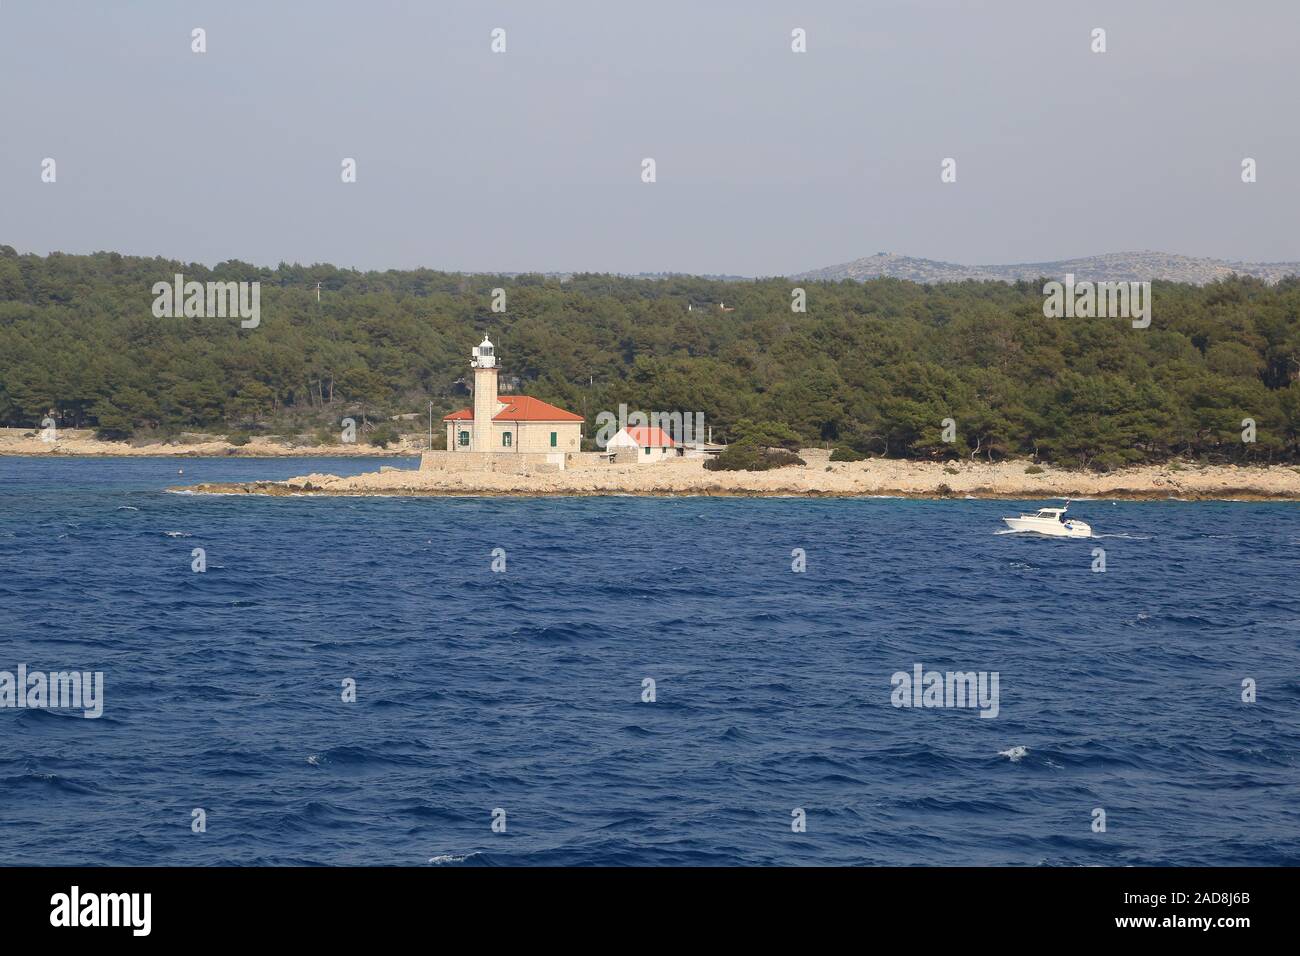 Le phare sur l'île de Brac dans la partie croate de la mer Adriatique, Banque D'Images